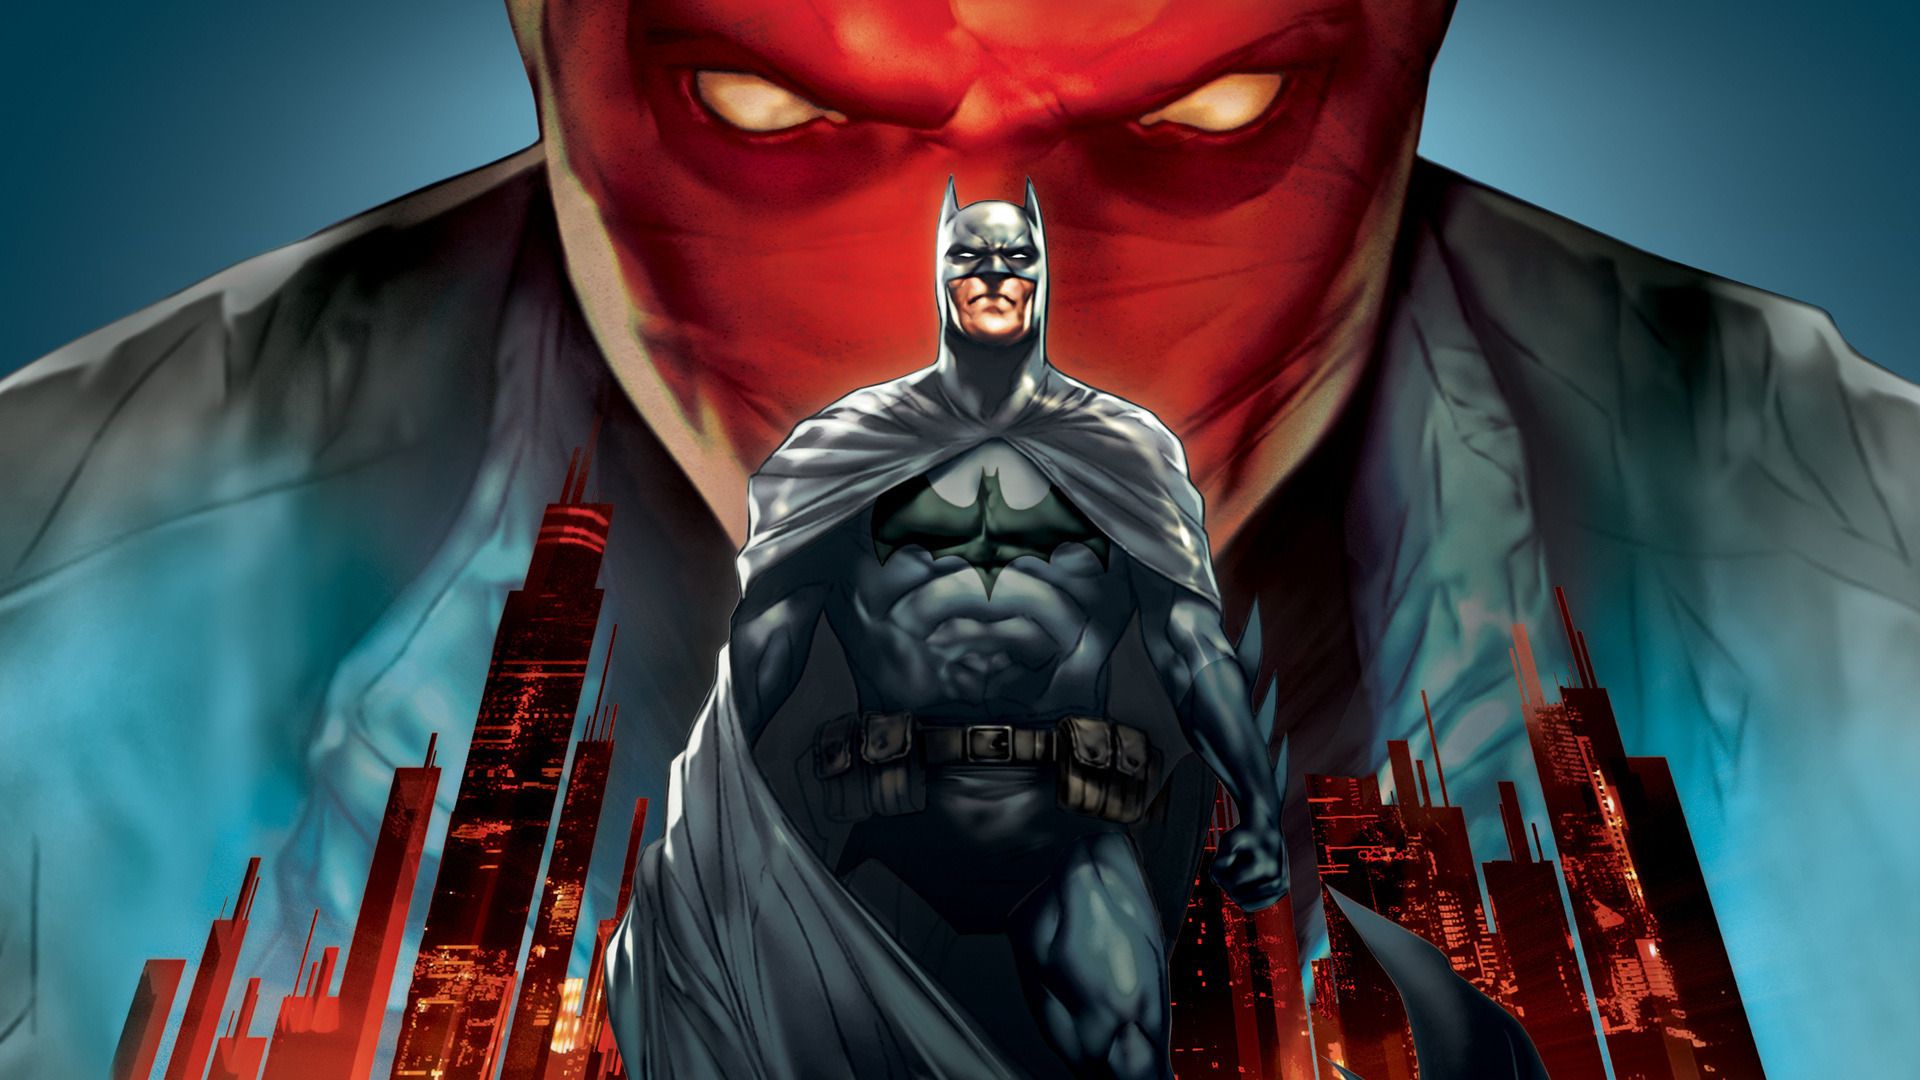 Cubierta de Batman: Capucha roja